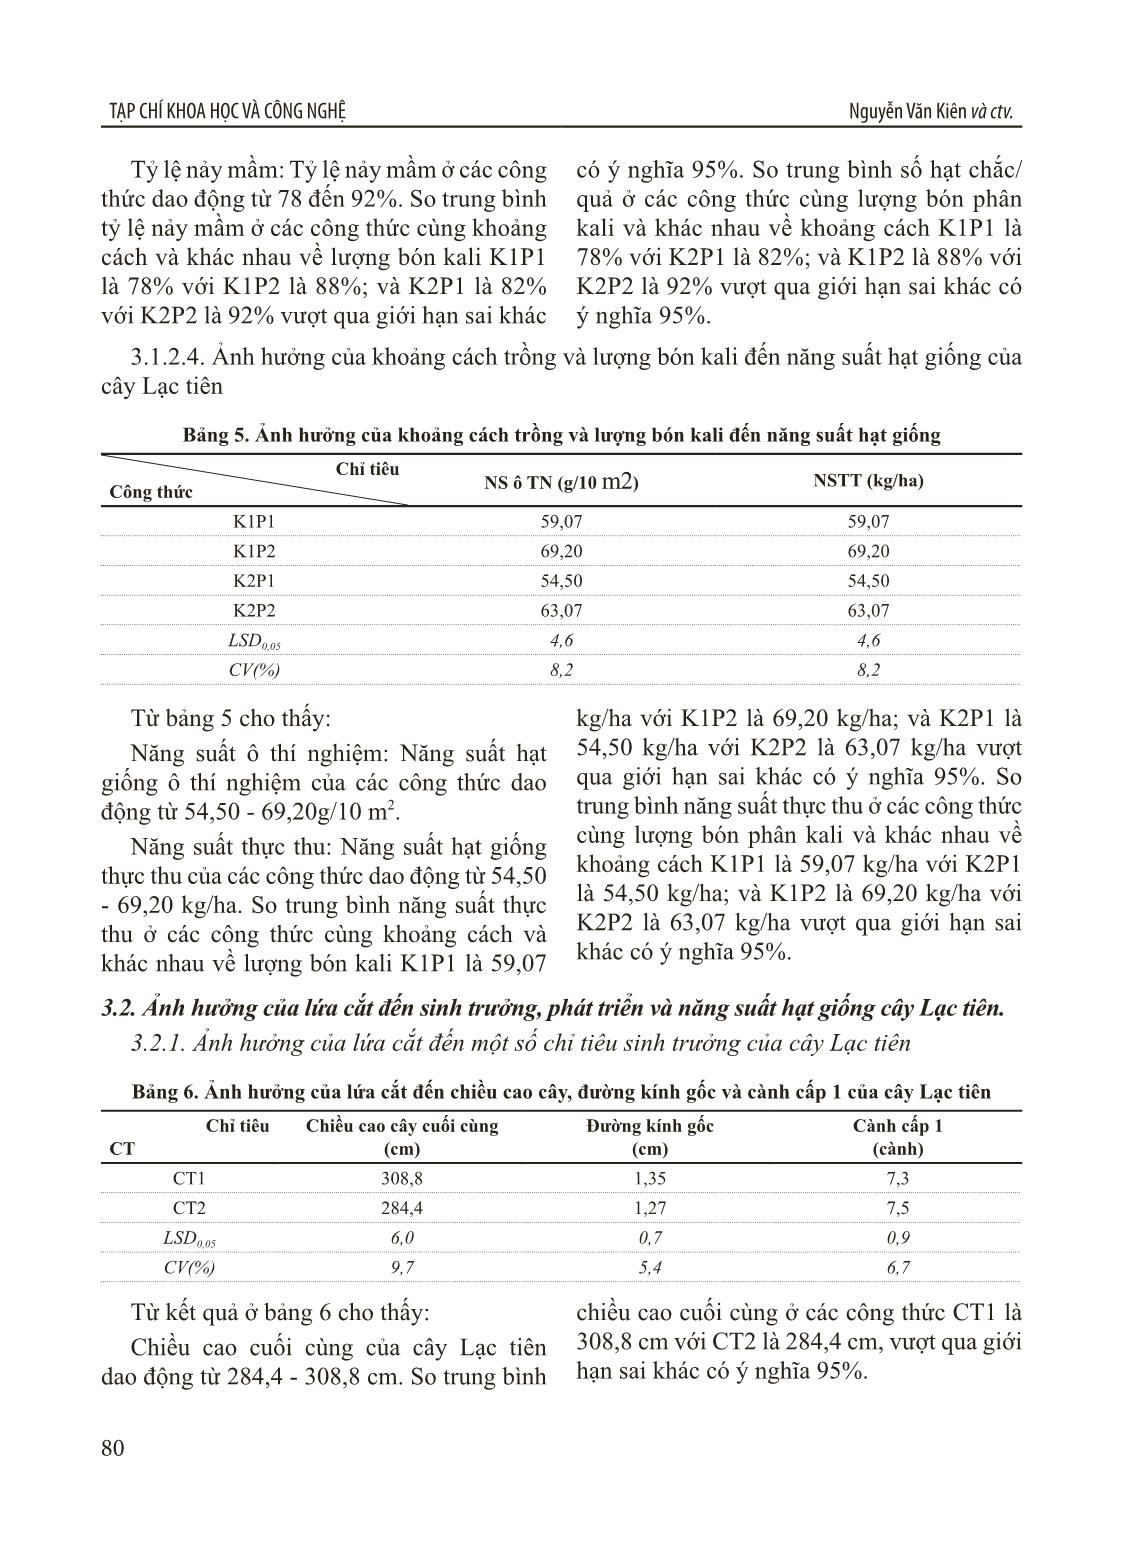 Nghiên cứu xây dựng quy trình sản xuất hạt giống lạc tiên (Passiflora foetida L.) tại Thanh Hóa trang 5